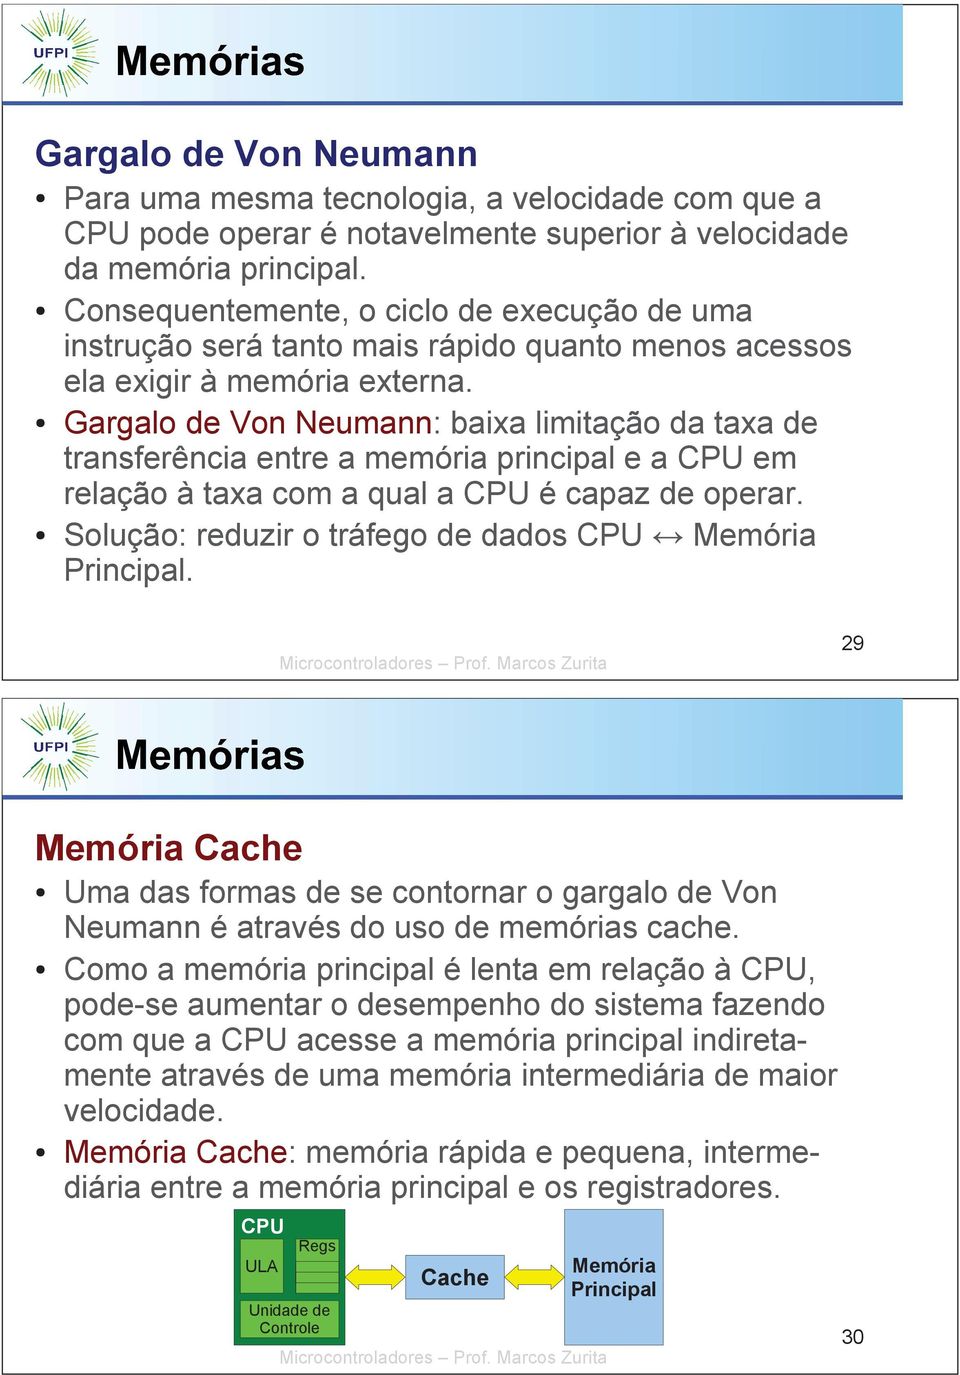 Gargalo de Von Neumann: baixa limitação da taxa de transferência entre a memória principal e a CPU em relação à taxa com a qual a CPU é capaz de operar.